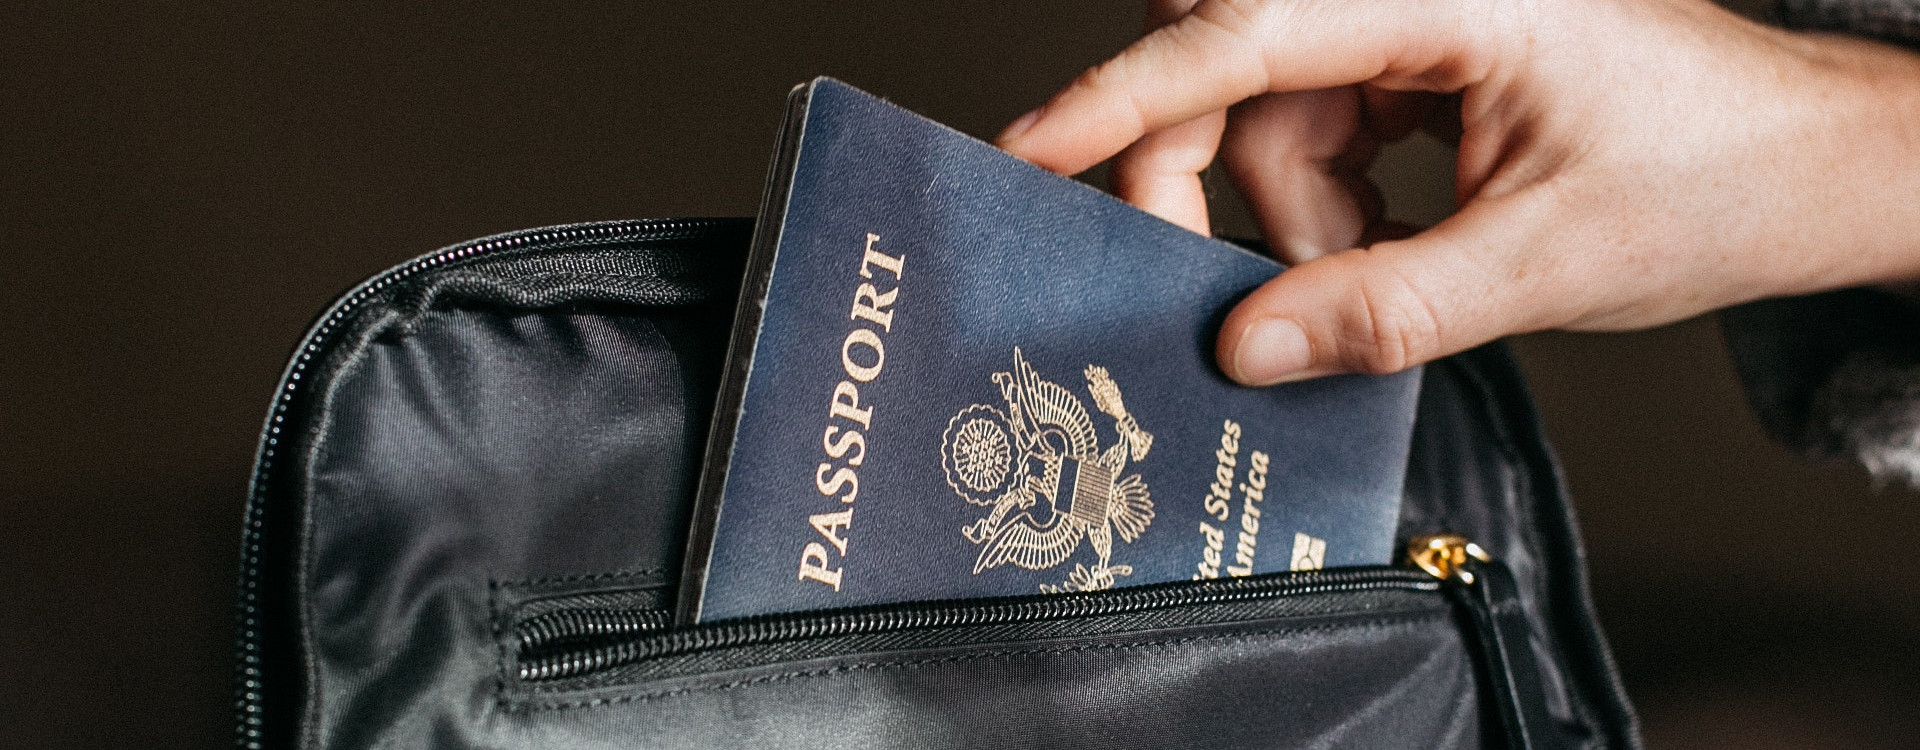 Passport Information